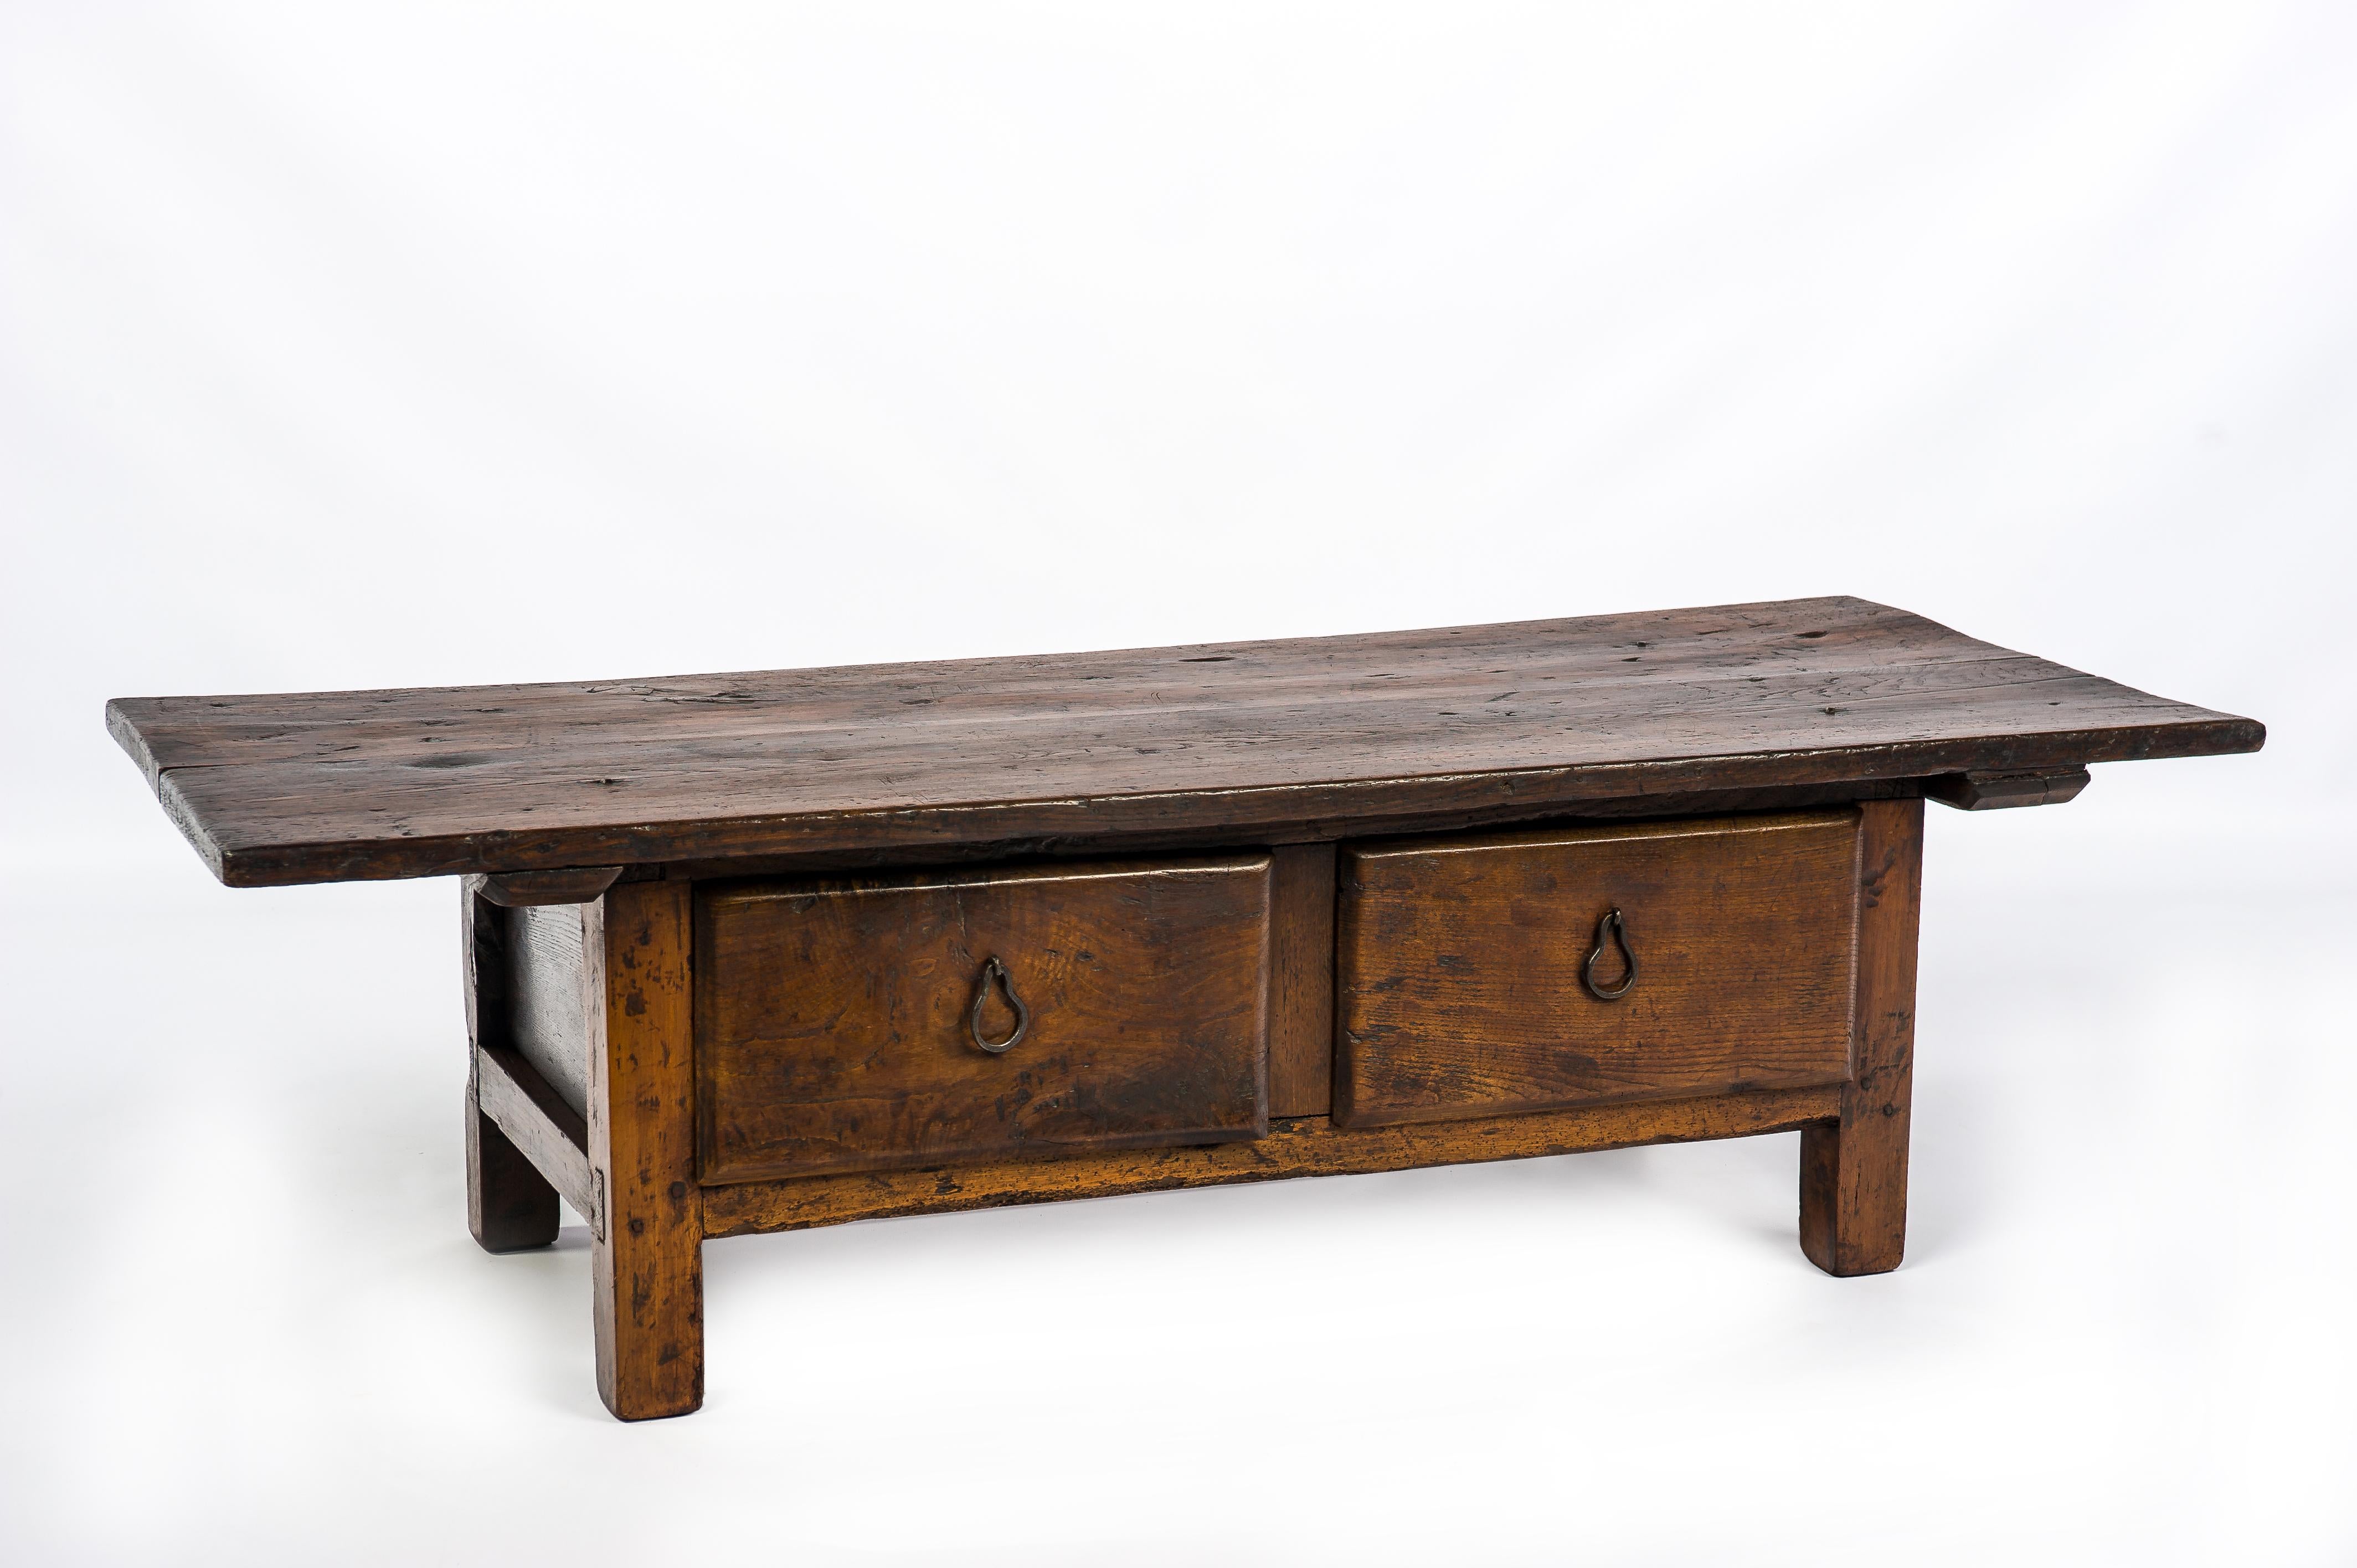 Dieser schöne rustikale Couchtisch oder niedrige Tisch in warmen Brauntönen stammt aus dem ländlichen Spanien und ist um 1750 entstanden. Der Tisch hat eine fantastische Platte, die aus zwei Brettern aus massivem Kastanienholz mit einer Dicke von